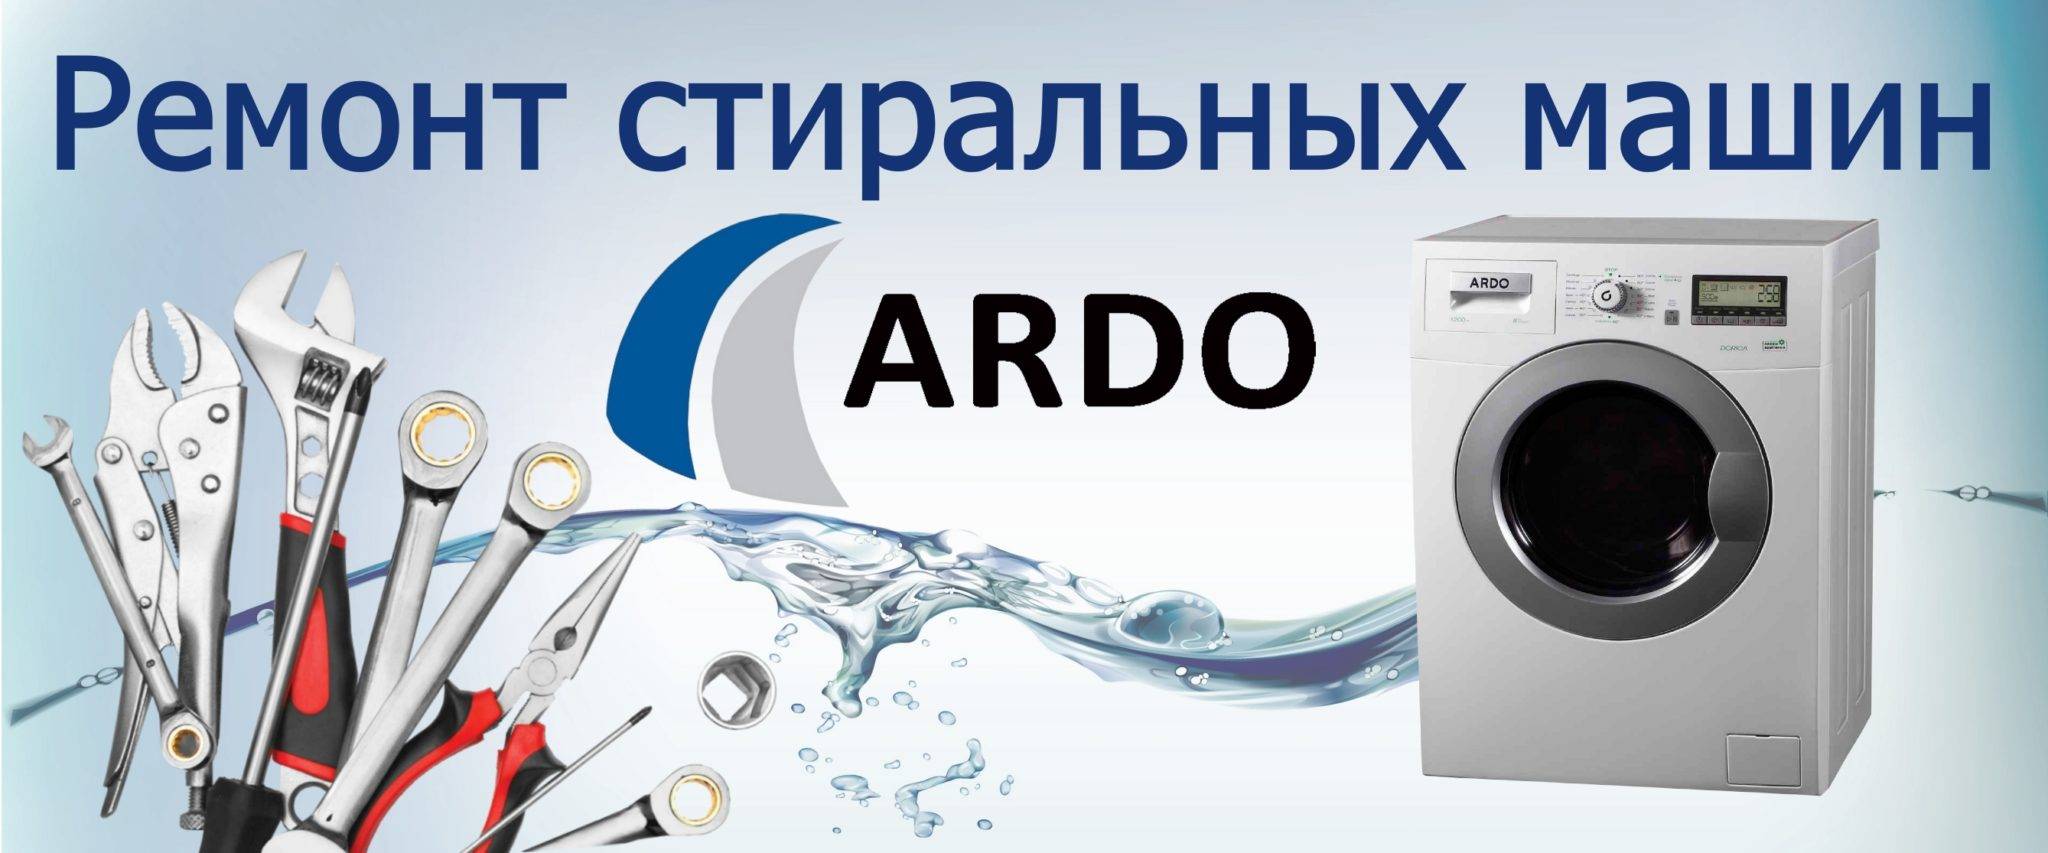 Стиральные машины Ardo: обзор модельного ряда + достоинства и недостатки стиралок бренда